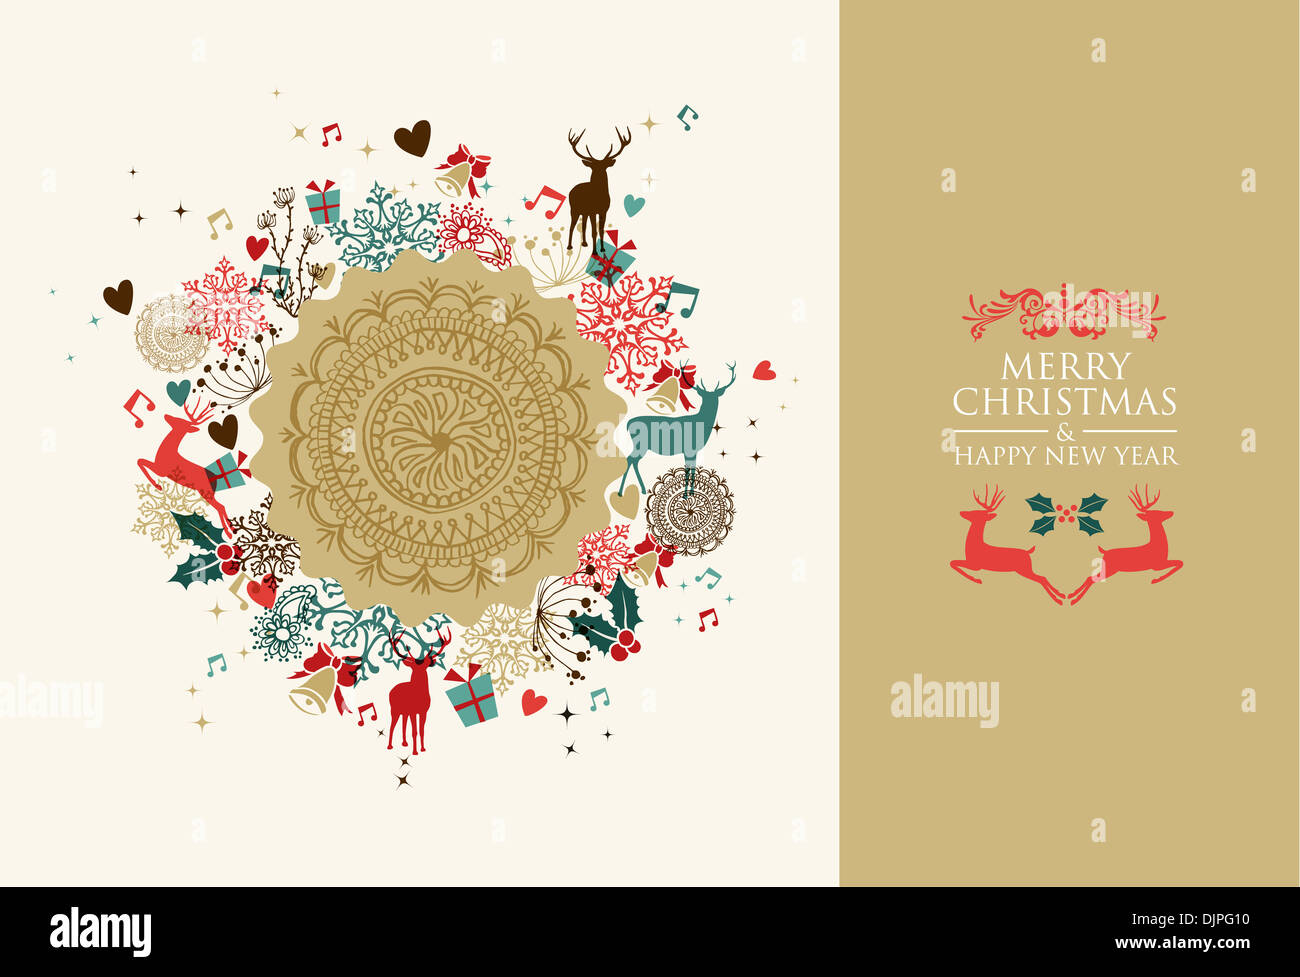 Retro-Farben Weihnachten Postkarte Rahmen. EPS10 Vektor-Datei organisiert in Schichten für die einfache Bearbeitung. Stockfoto